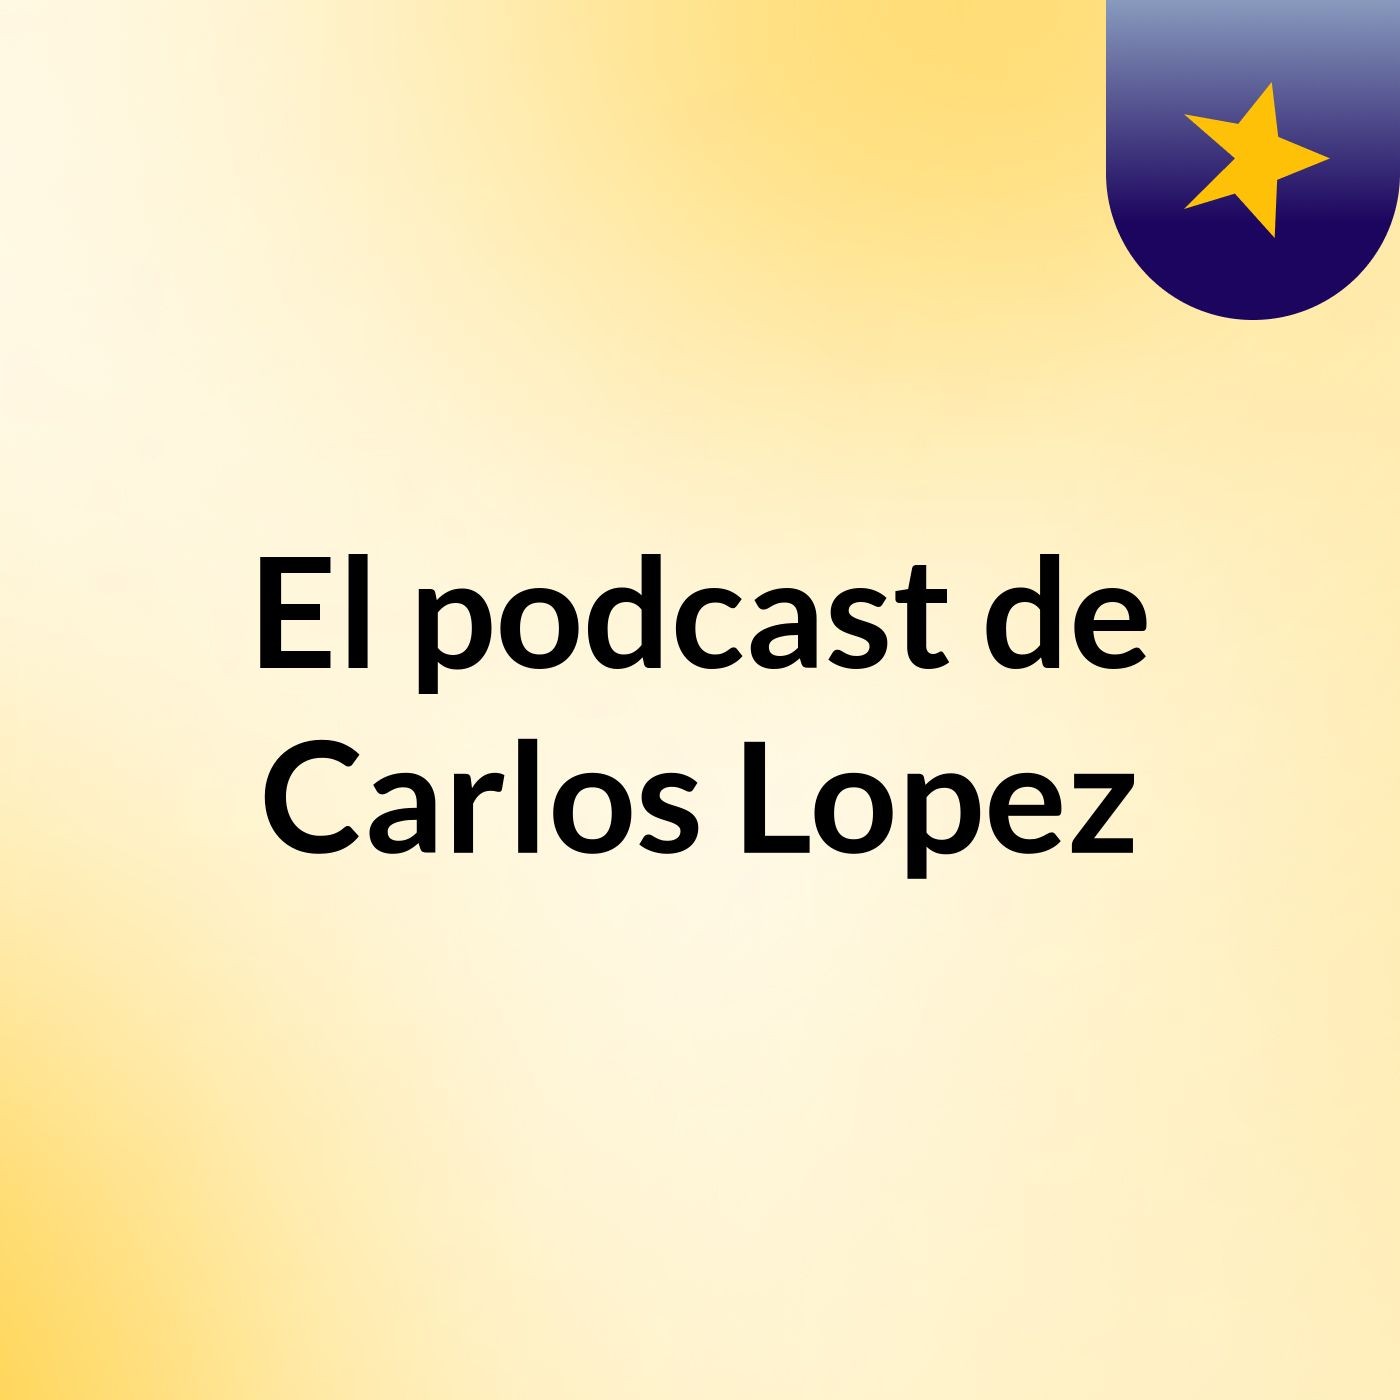 El podcast de Carlos Lopez